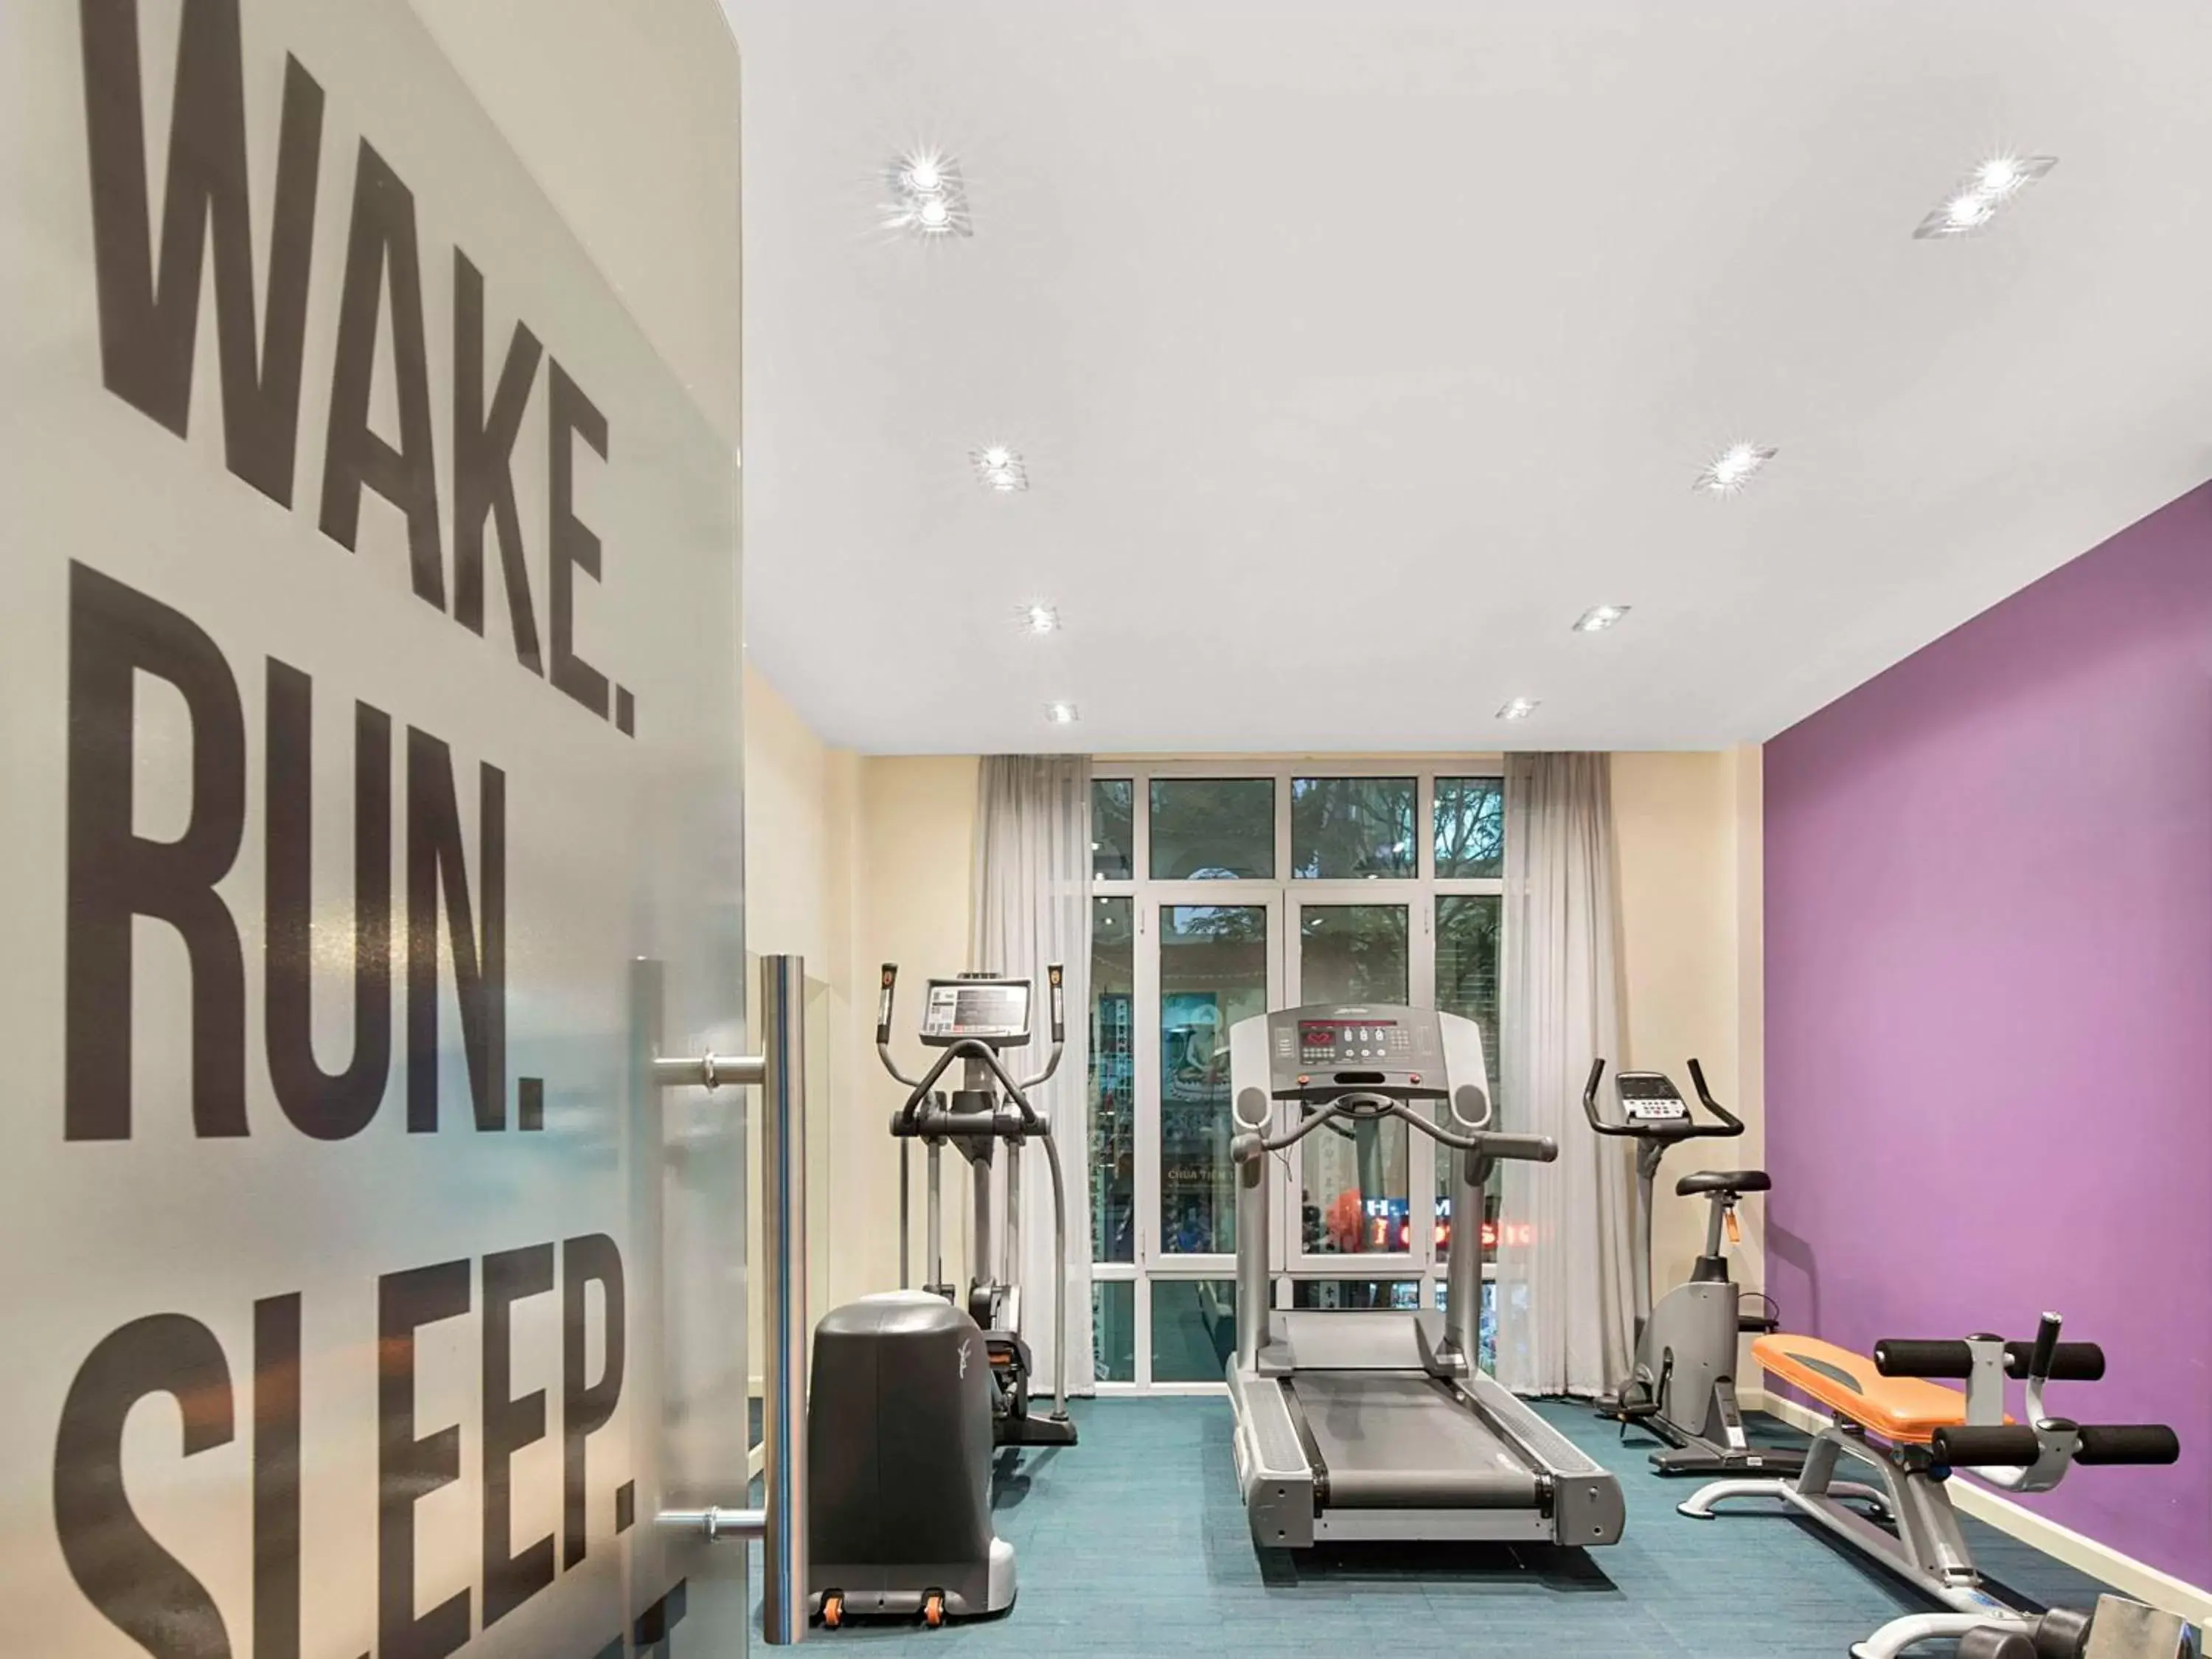 Fitness centre/facilities in Mercure Hanoi La Gare Hotel